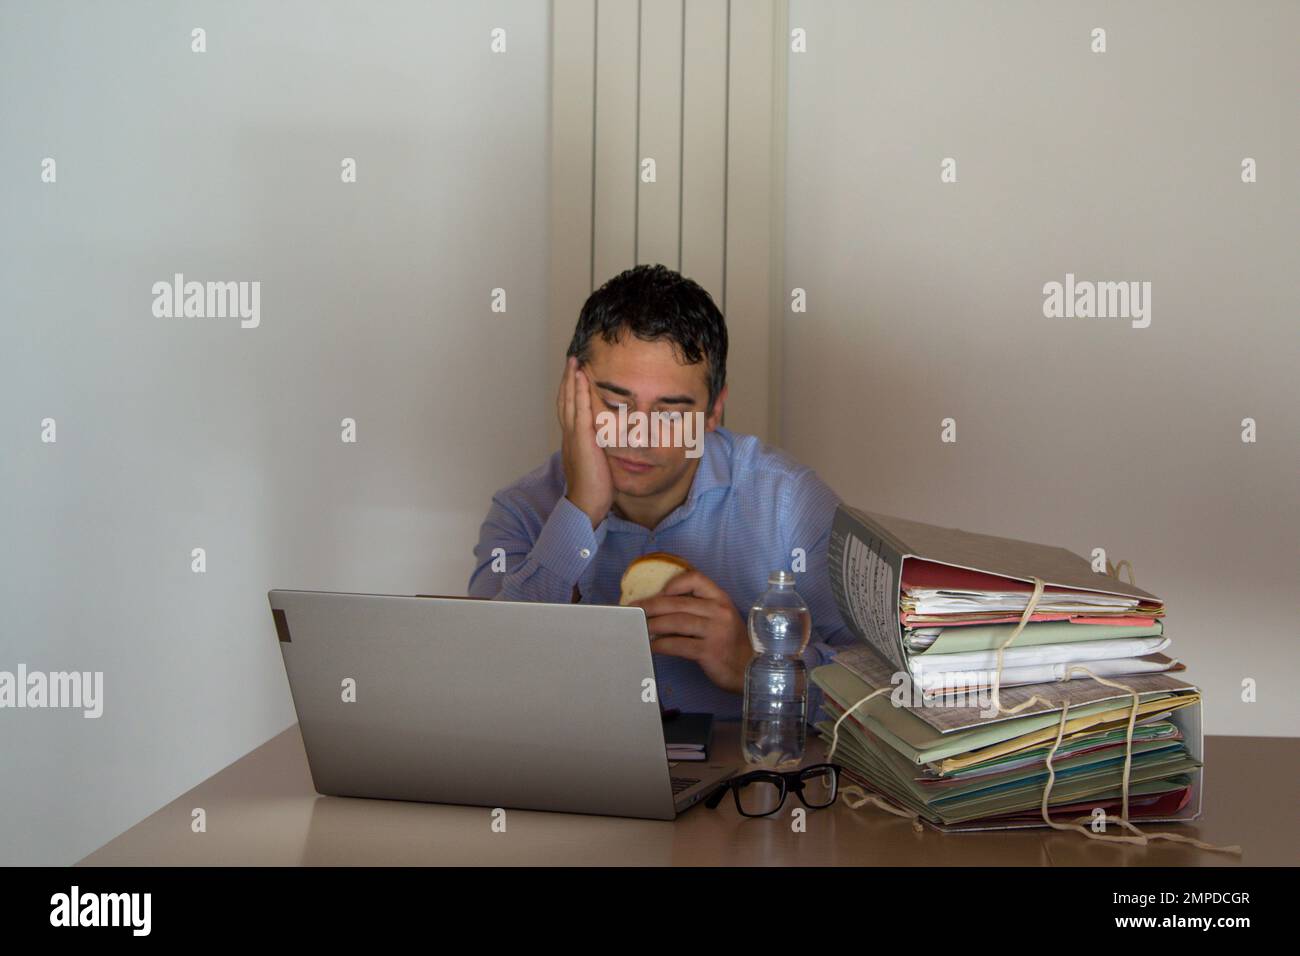 Bild eines verzweifelten Mannes mit einem Sandwich und einer kleinen Flasche Wasser, der wegen Überstunden in seinem Büro arbeiten muss. Stockfoto